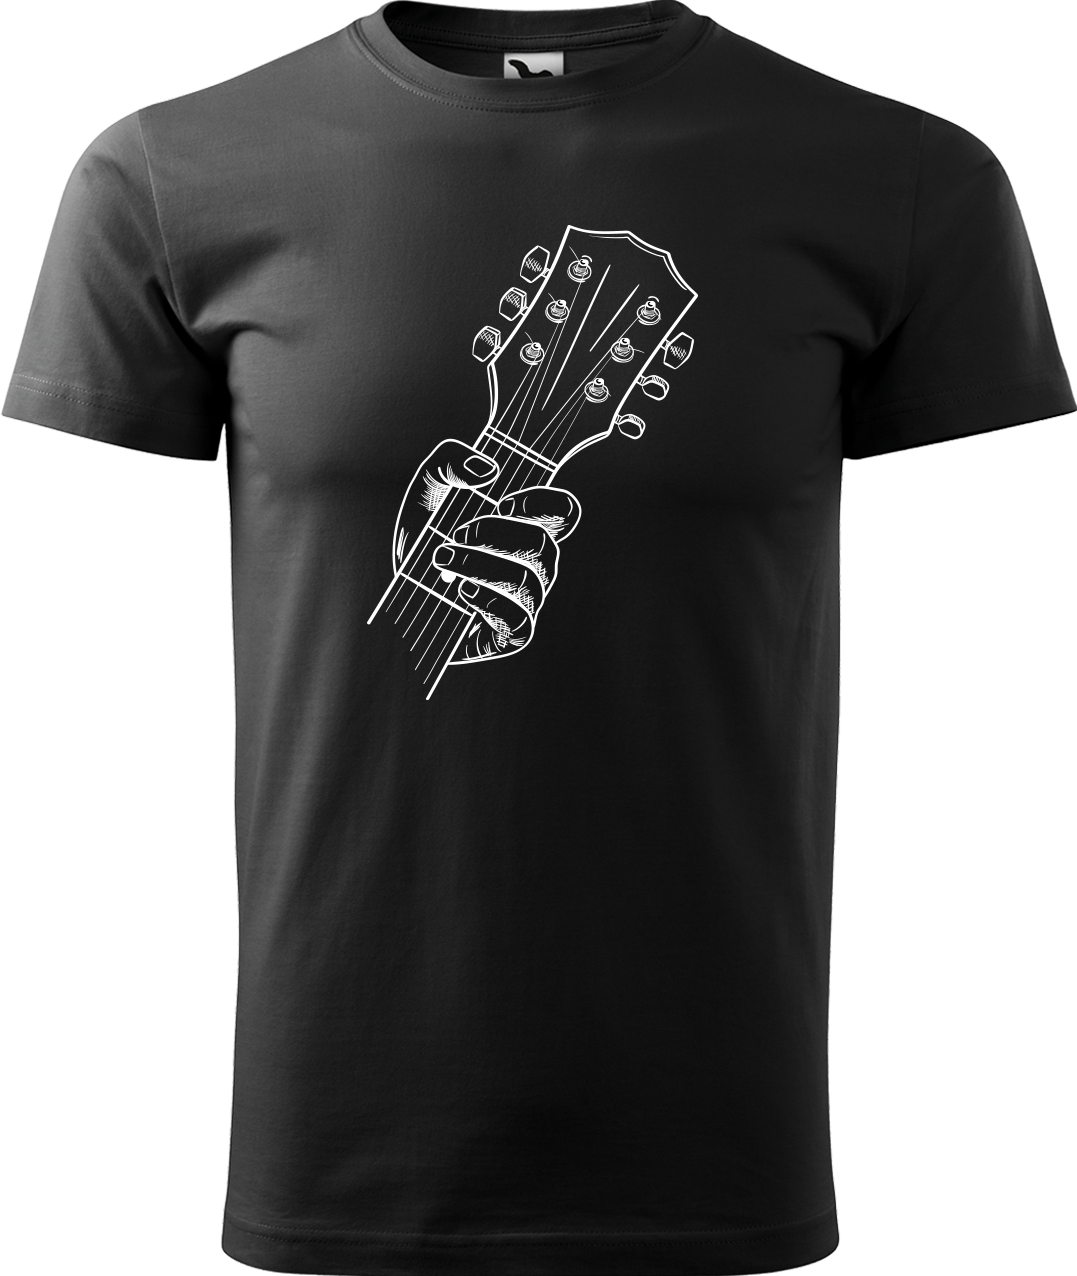 Pánské tričko s kytarou - Hlava kytary Velikost: 4XL, Barva: Černá (01)